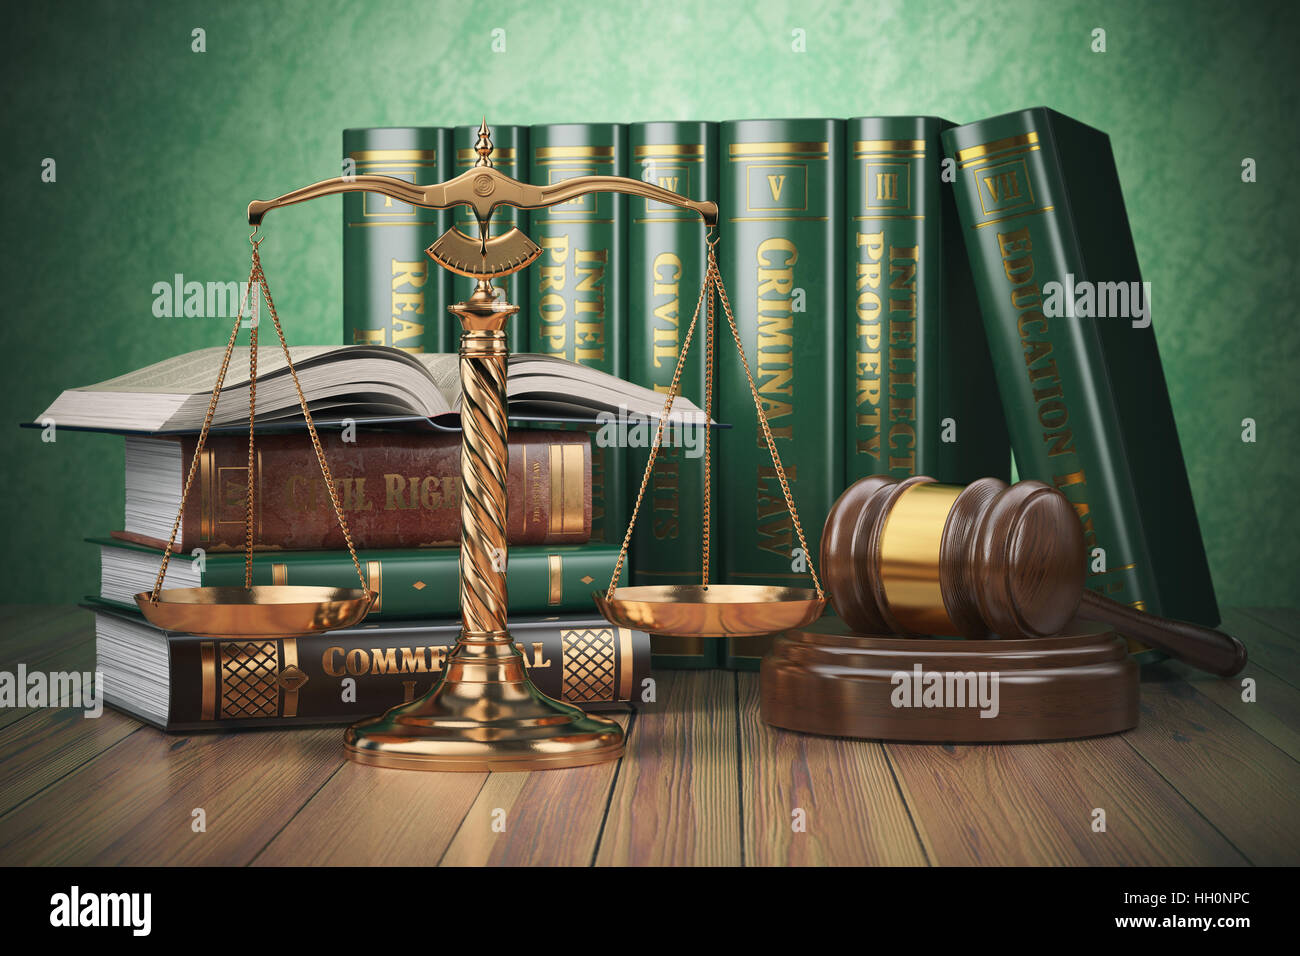 Échelles d'or de la justice, Gavel et livres avec les différents domaines du droit. Concept de la Justice. 3d illustration Banque D'Images